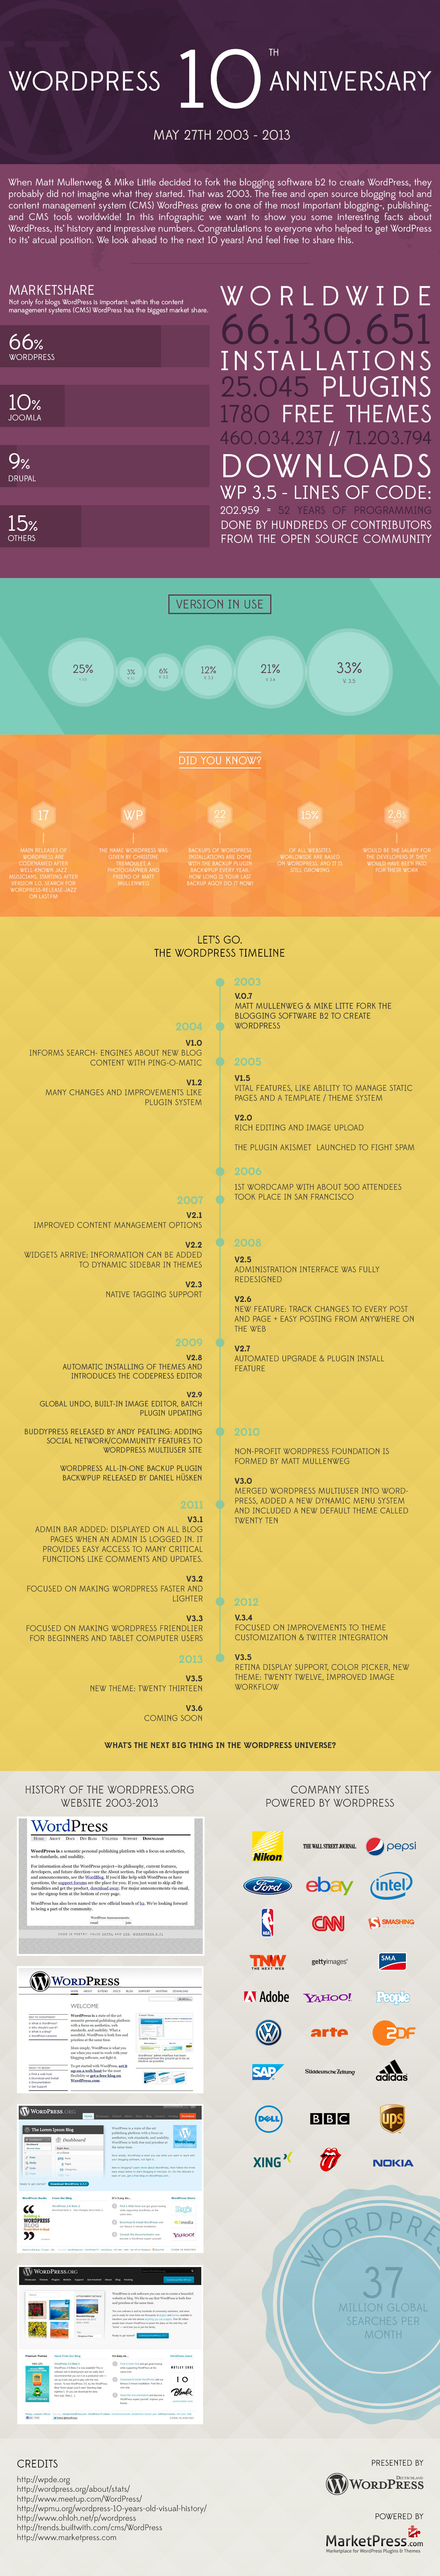 wordpress-anniversary-infographic